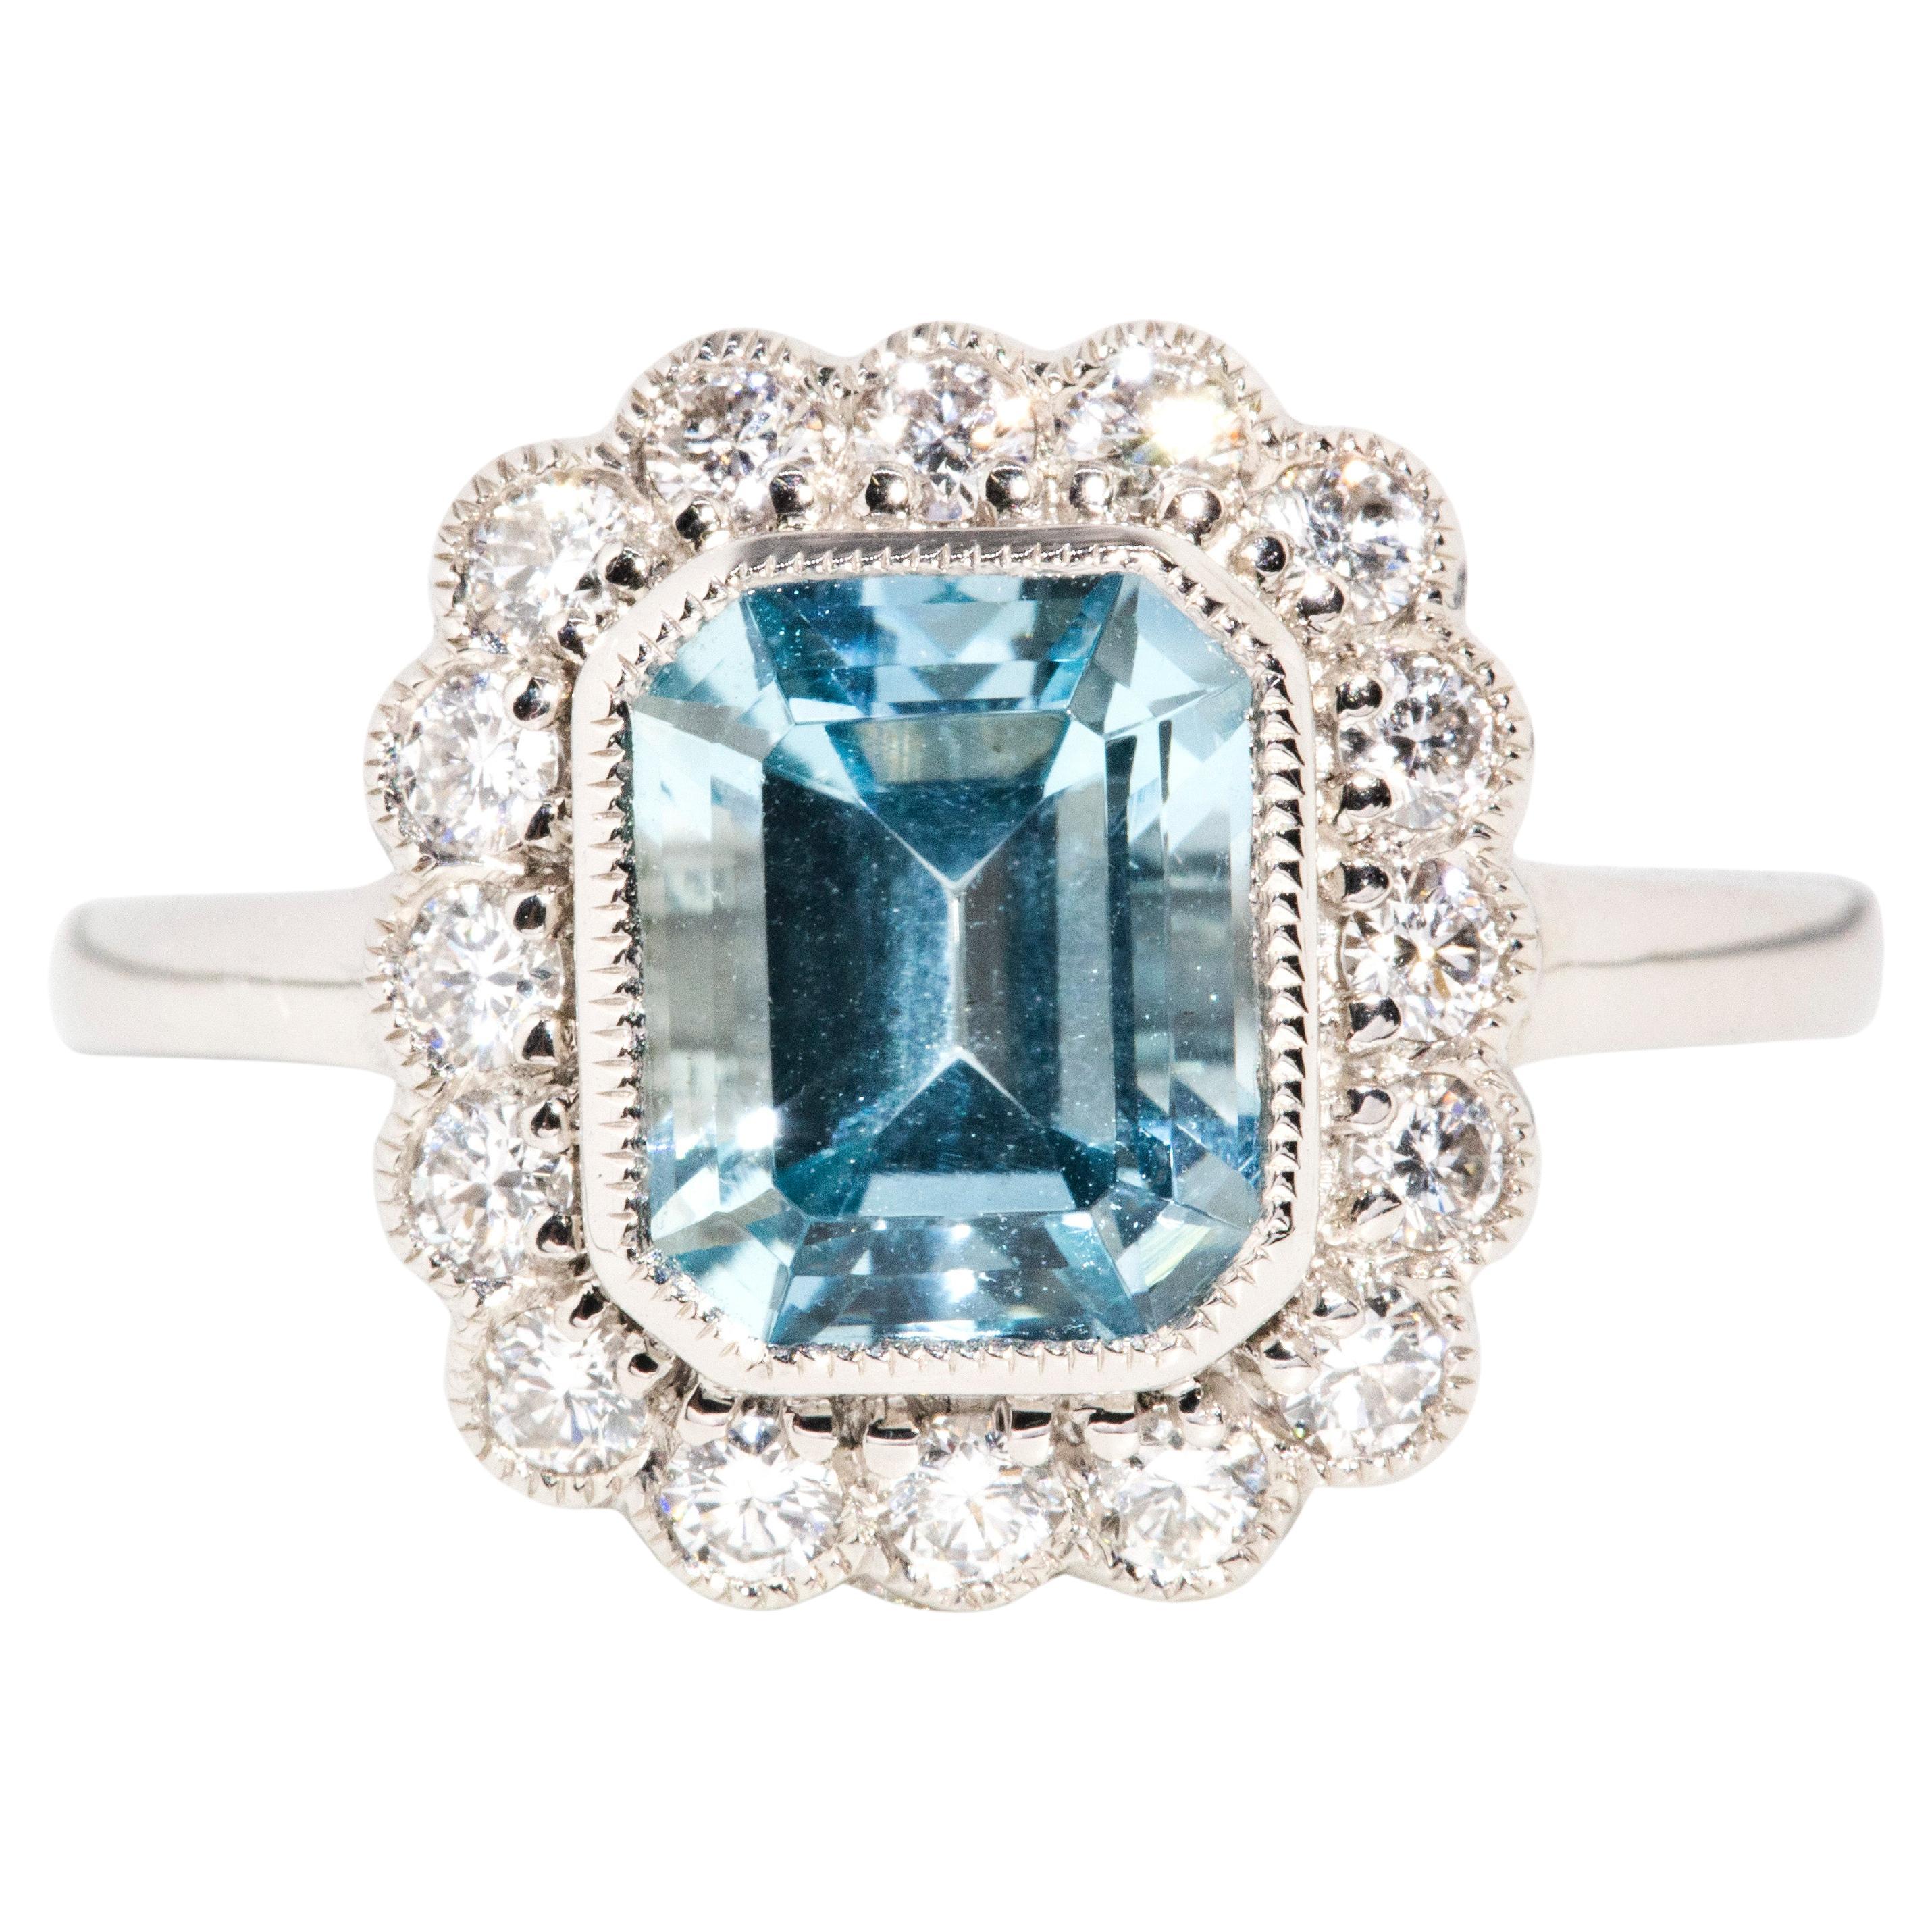 Contemporary 2.61 Carat Bright Light Blue Aquamarine & Diamond Platinum Ring